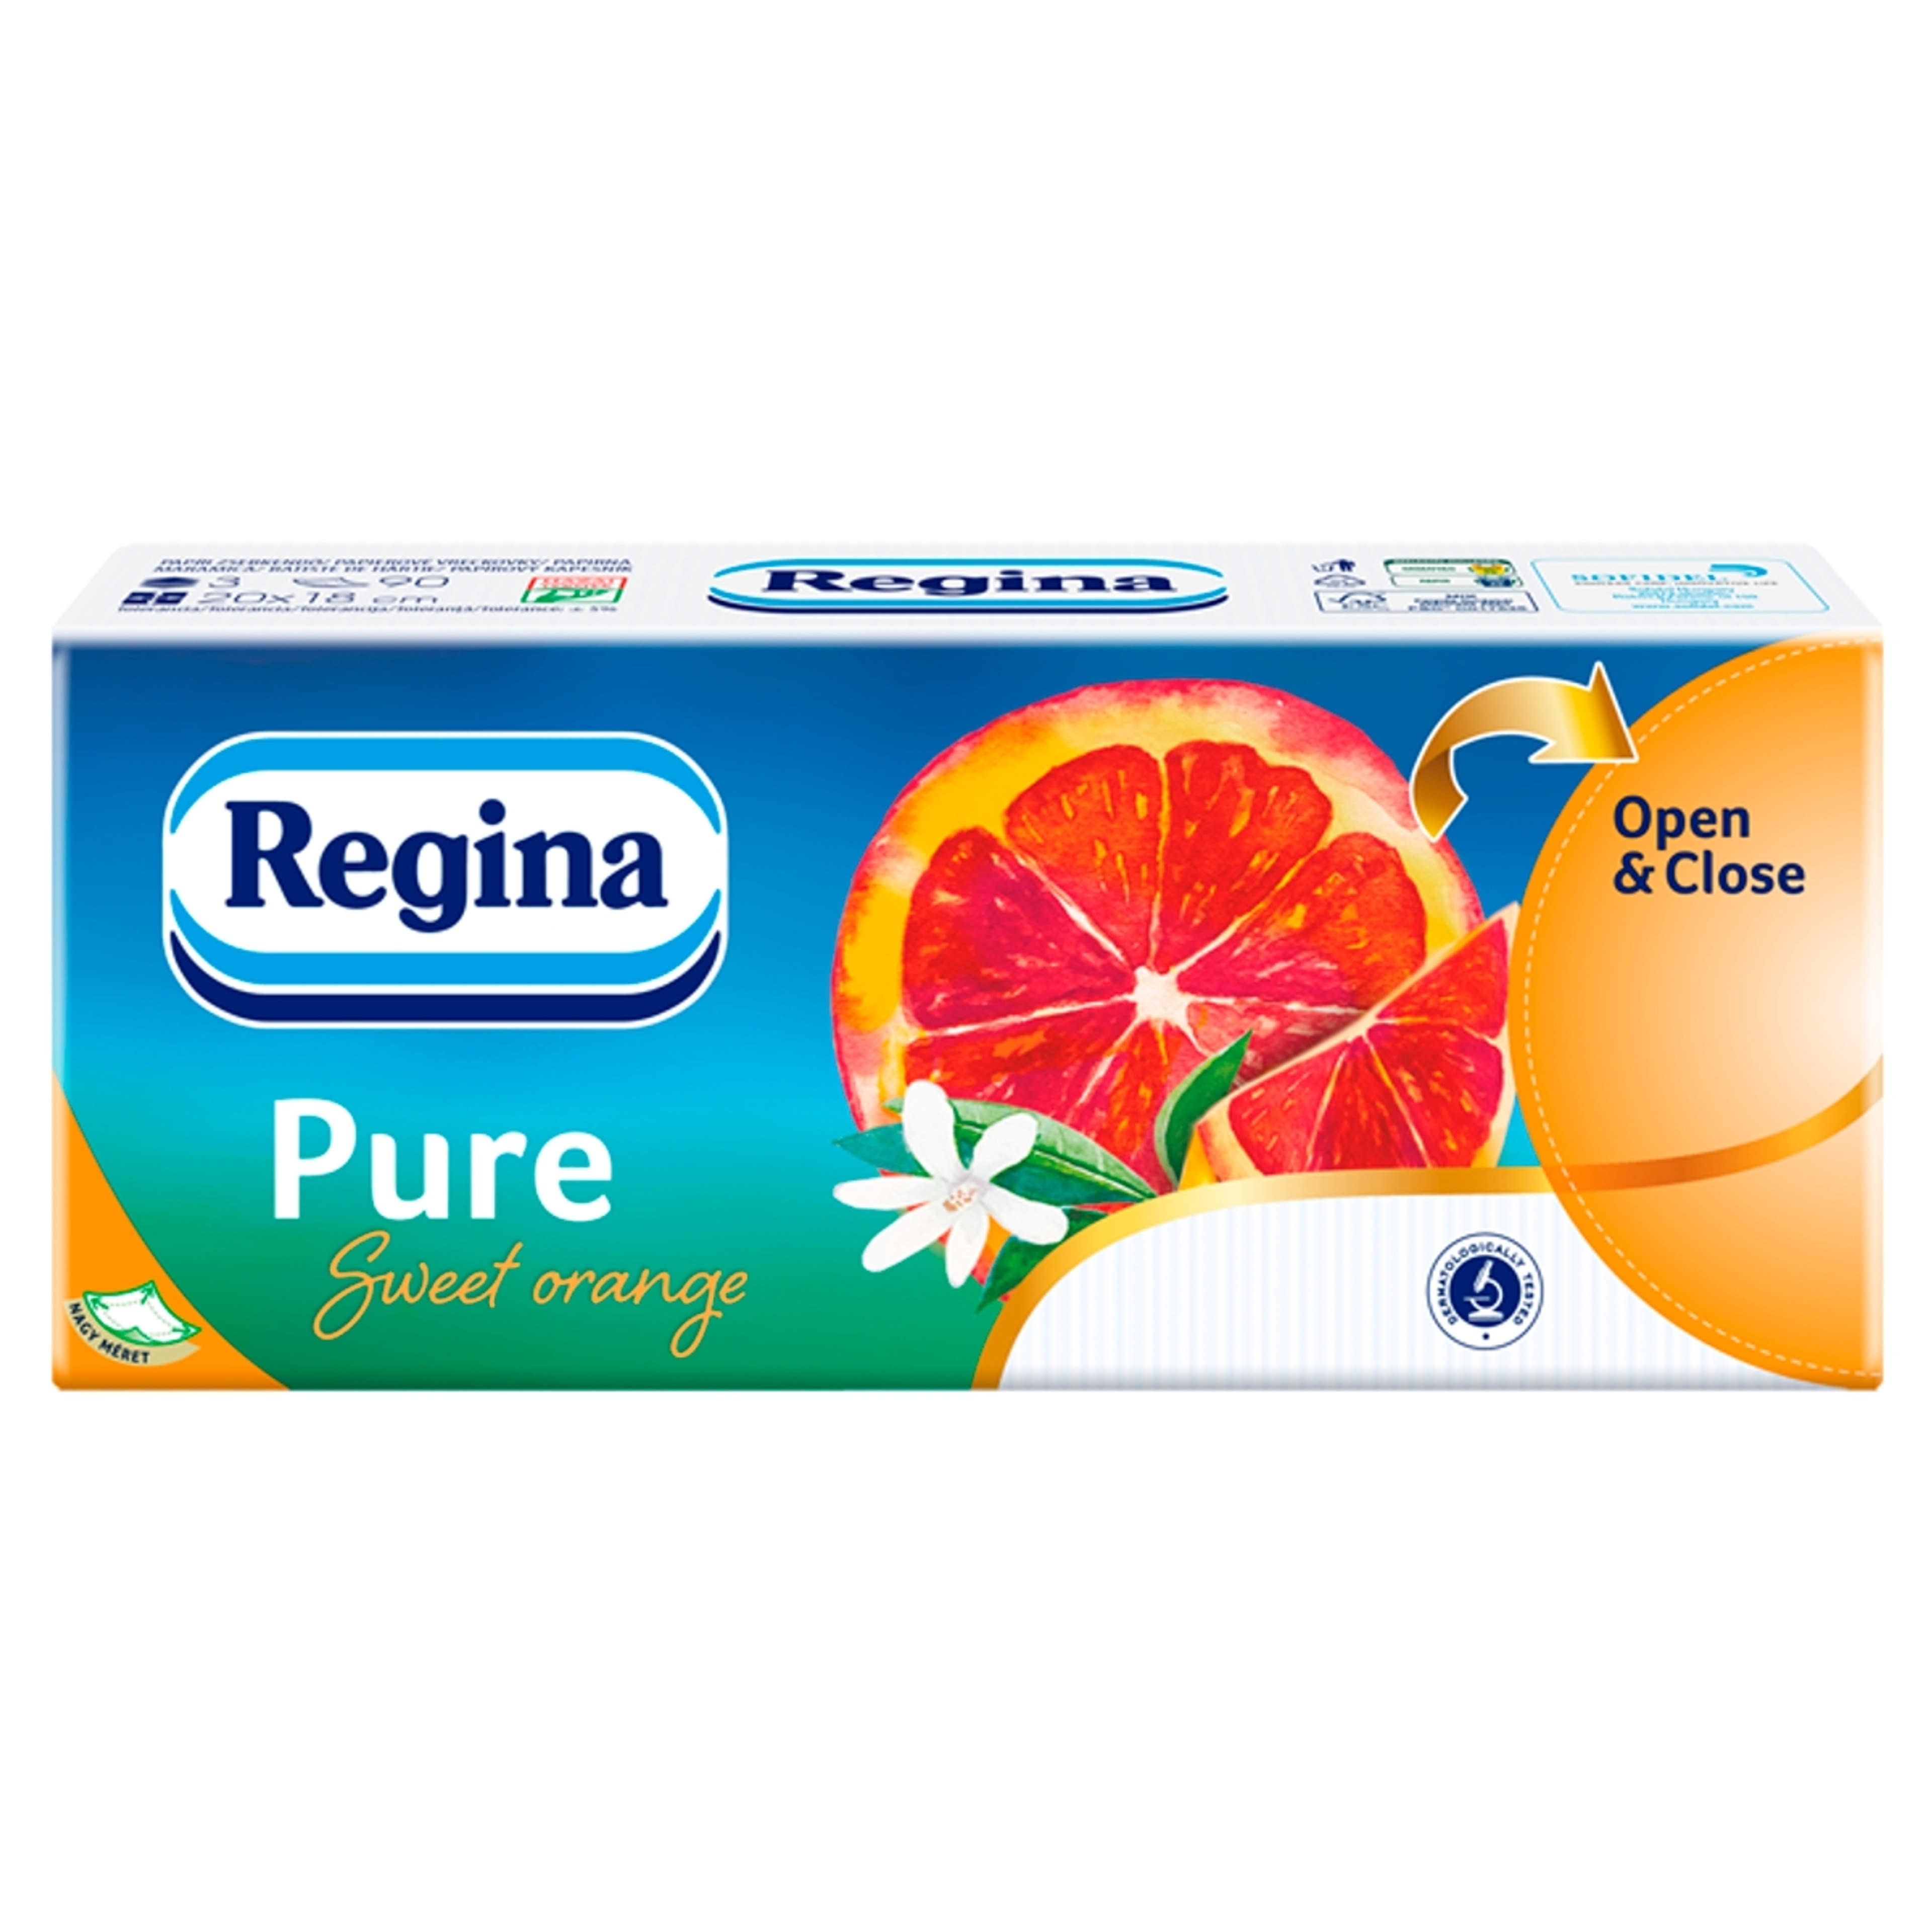 Regina papírzsebkendő pure orange 3 rétegű - 1 db-1